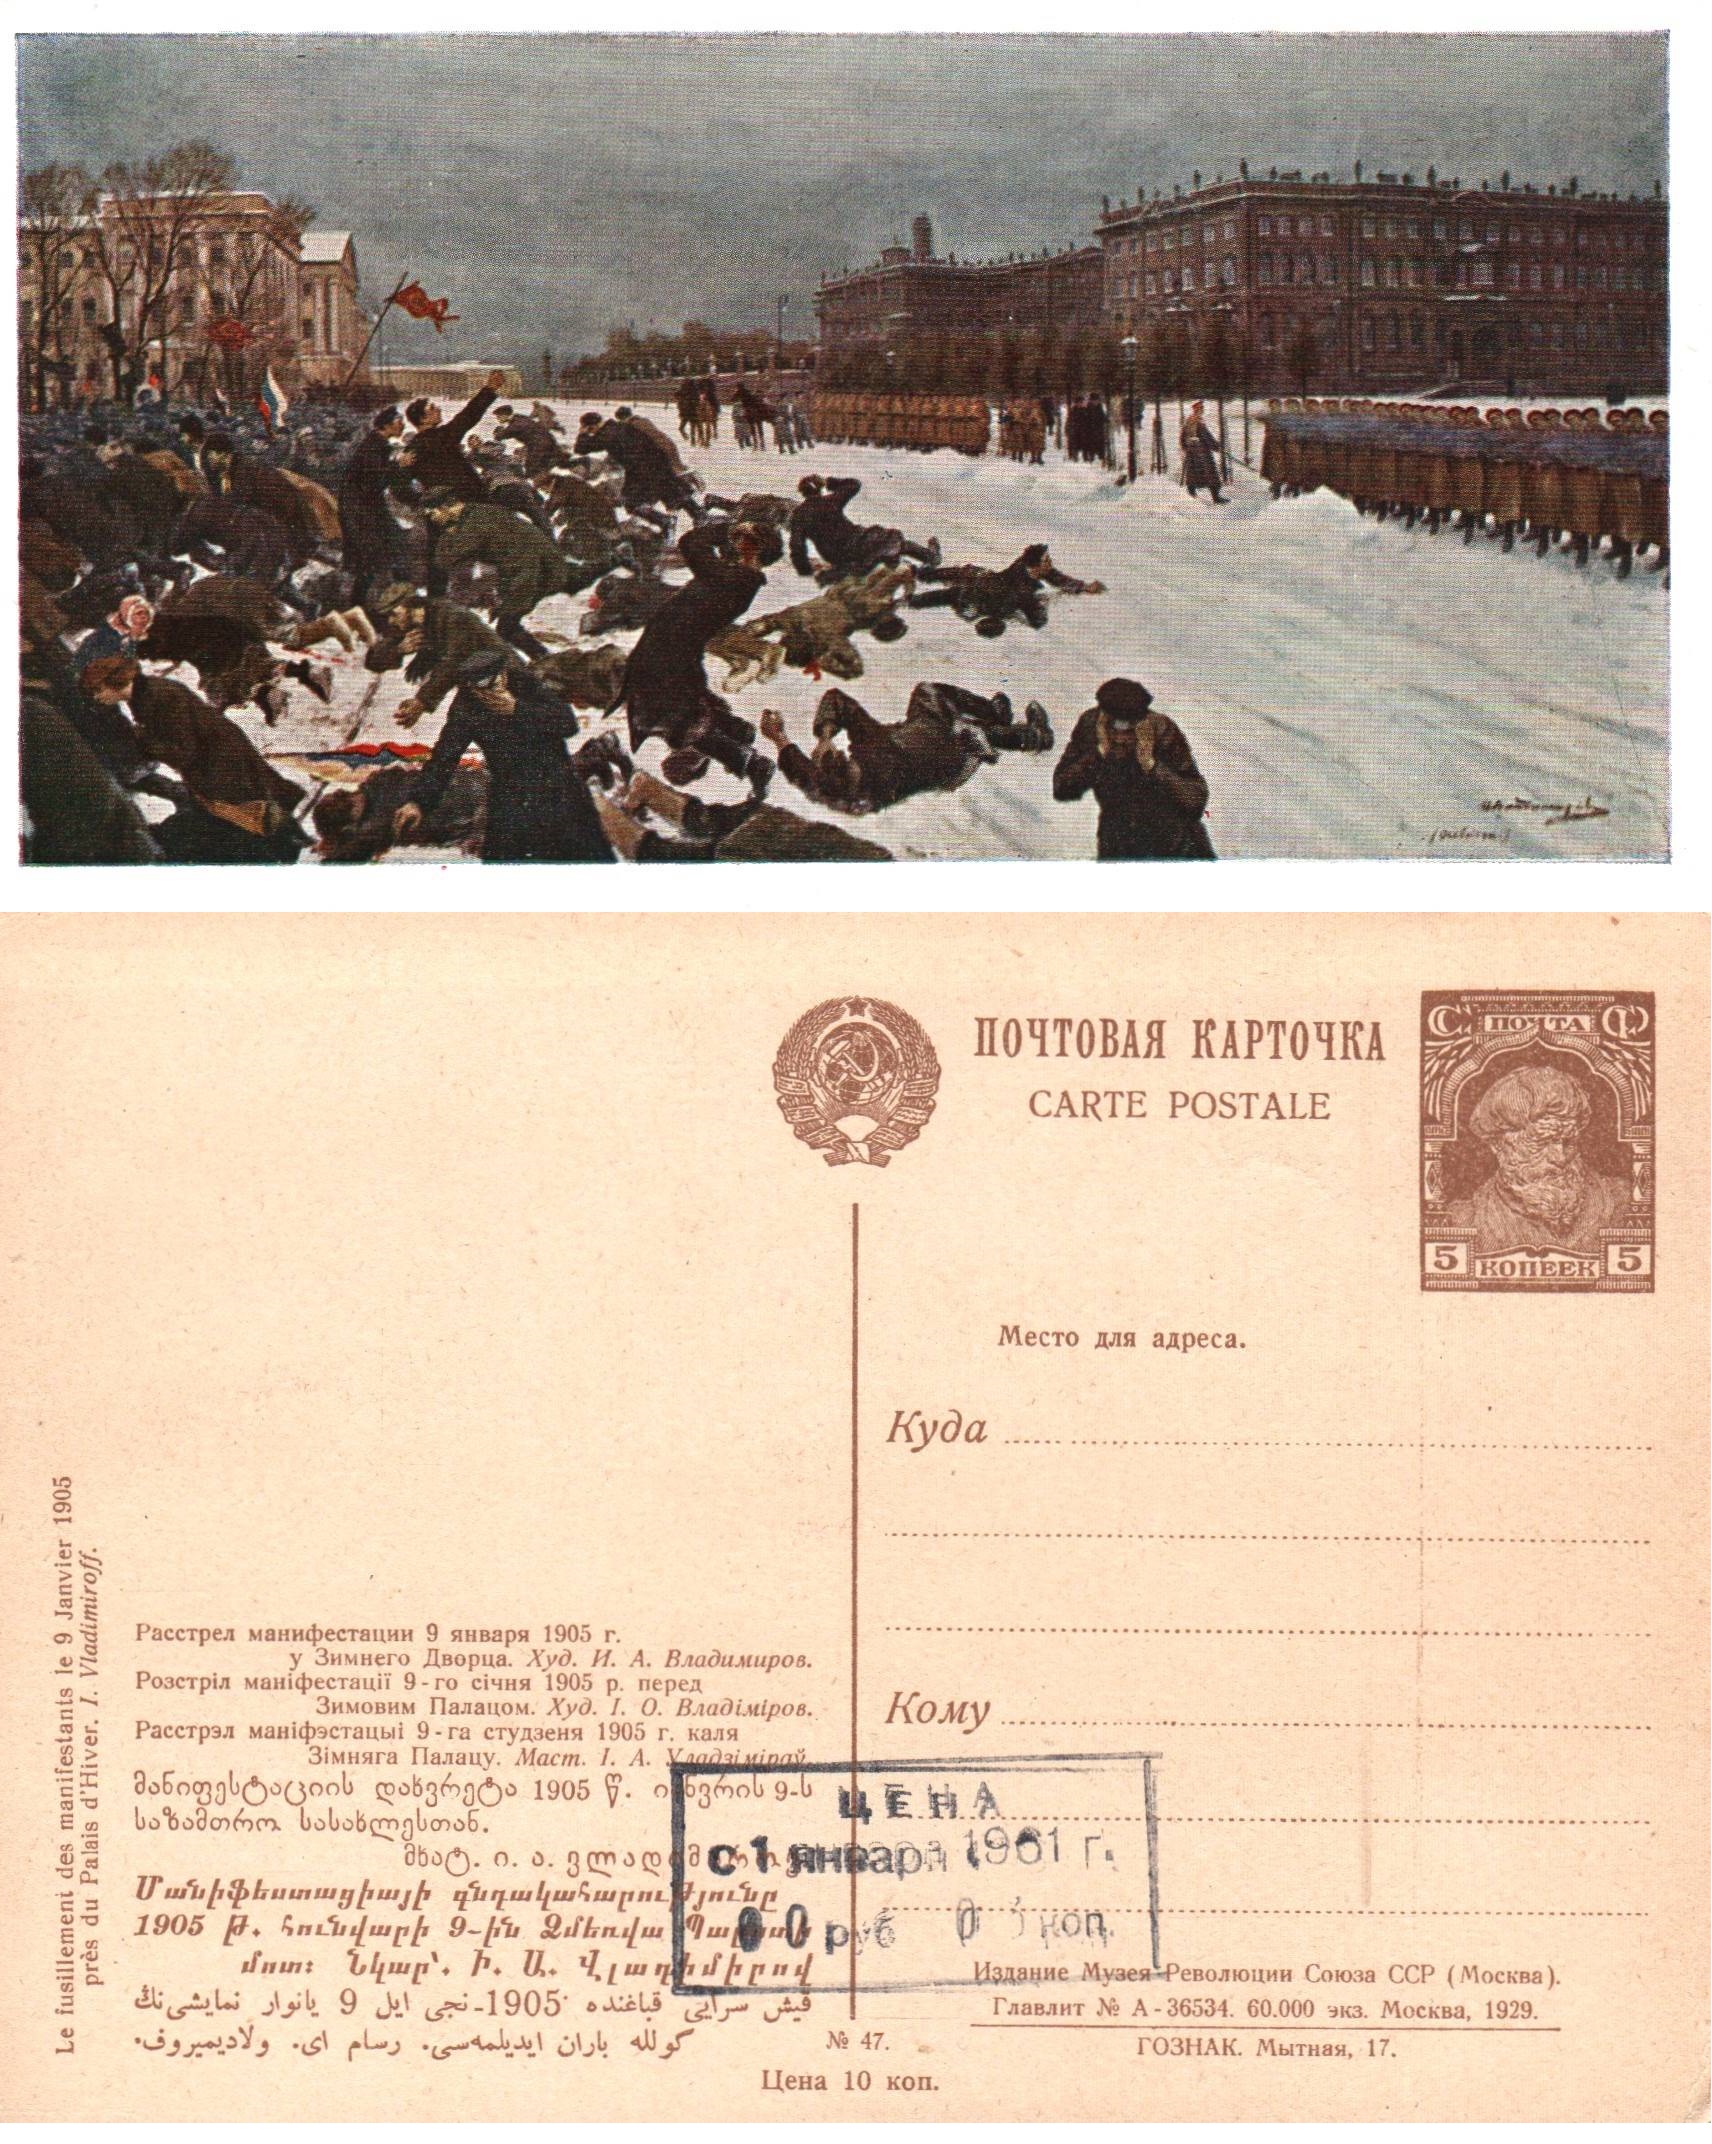 Postal Stationery - Soviet Union Scott 2248 